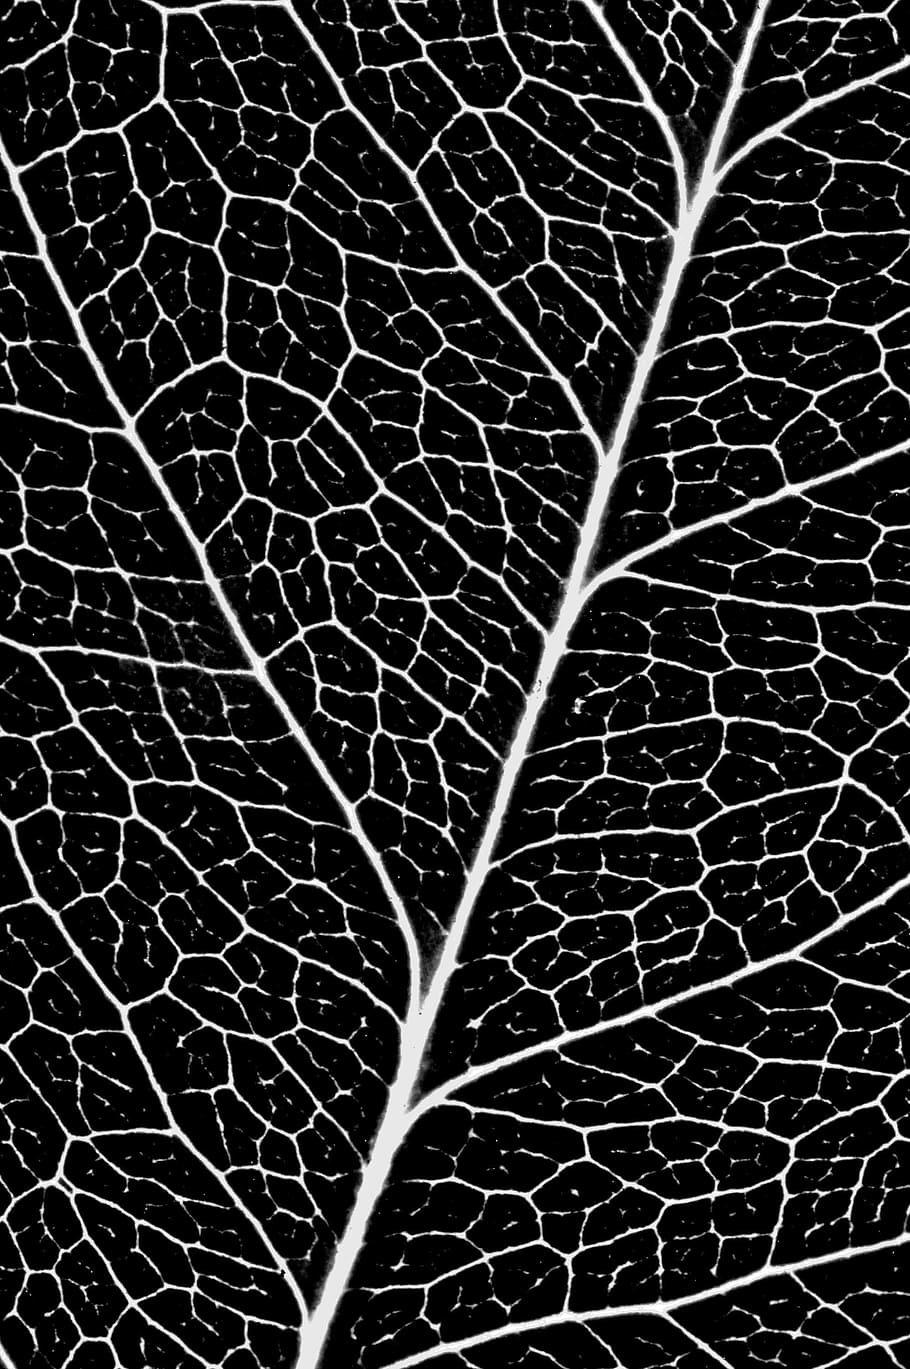 sheet, veins, pattern, flora, backgrounds, full frame, close-up, leaf vein, textured, fragility